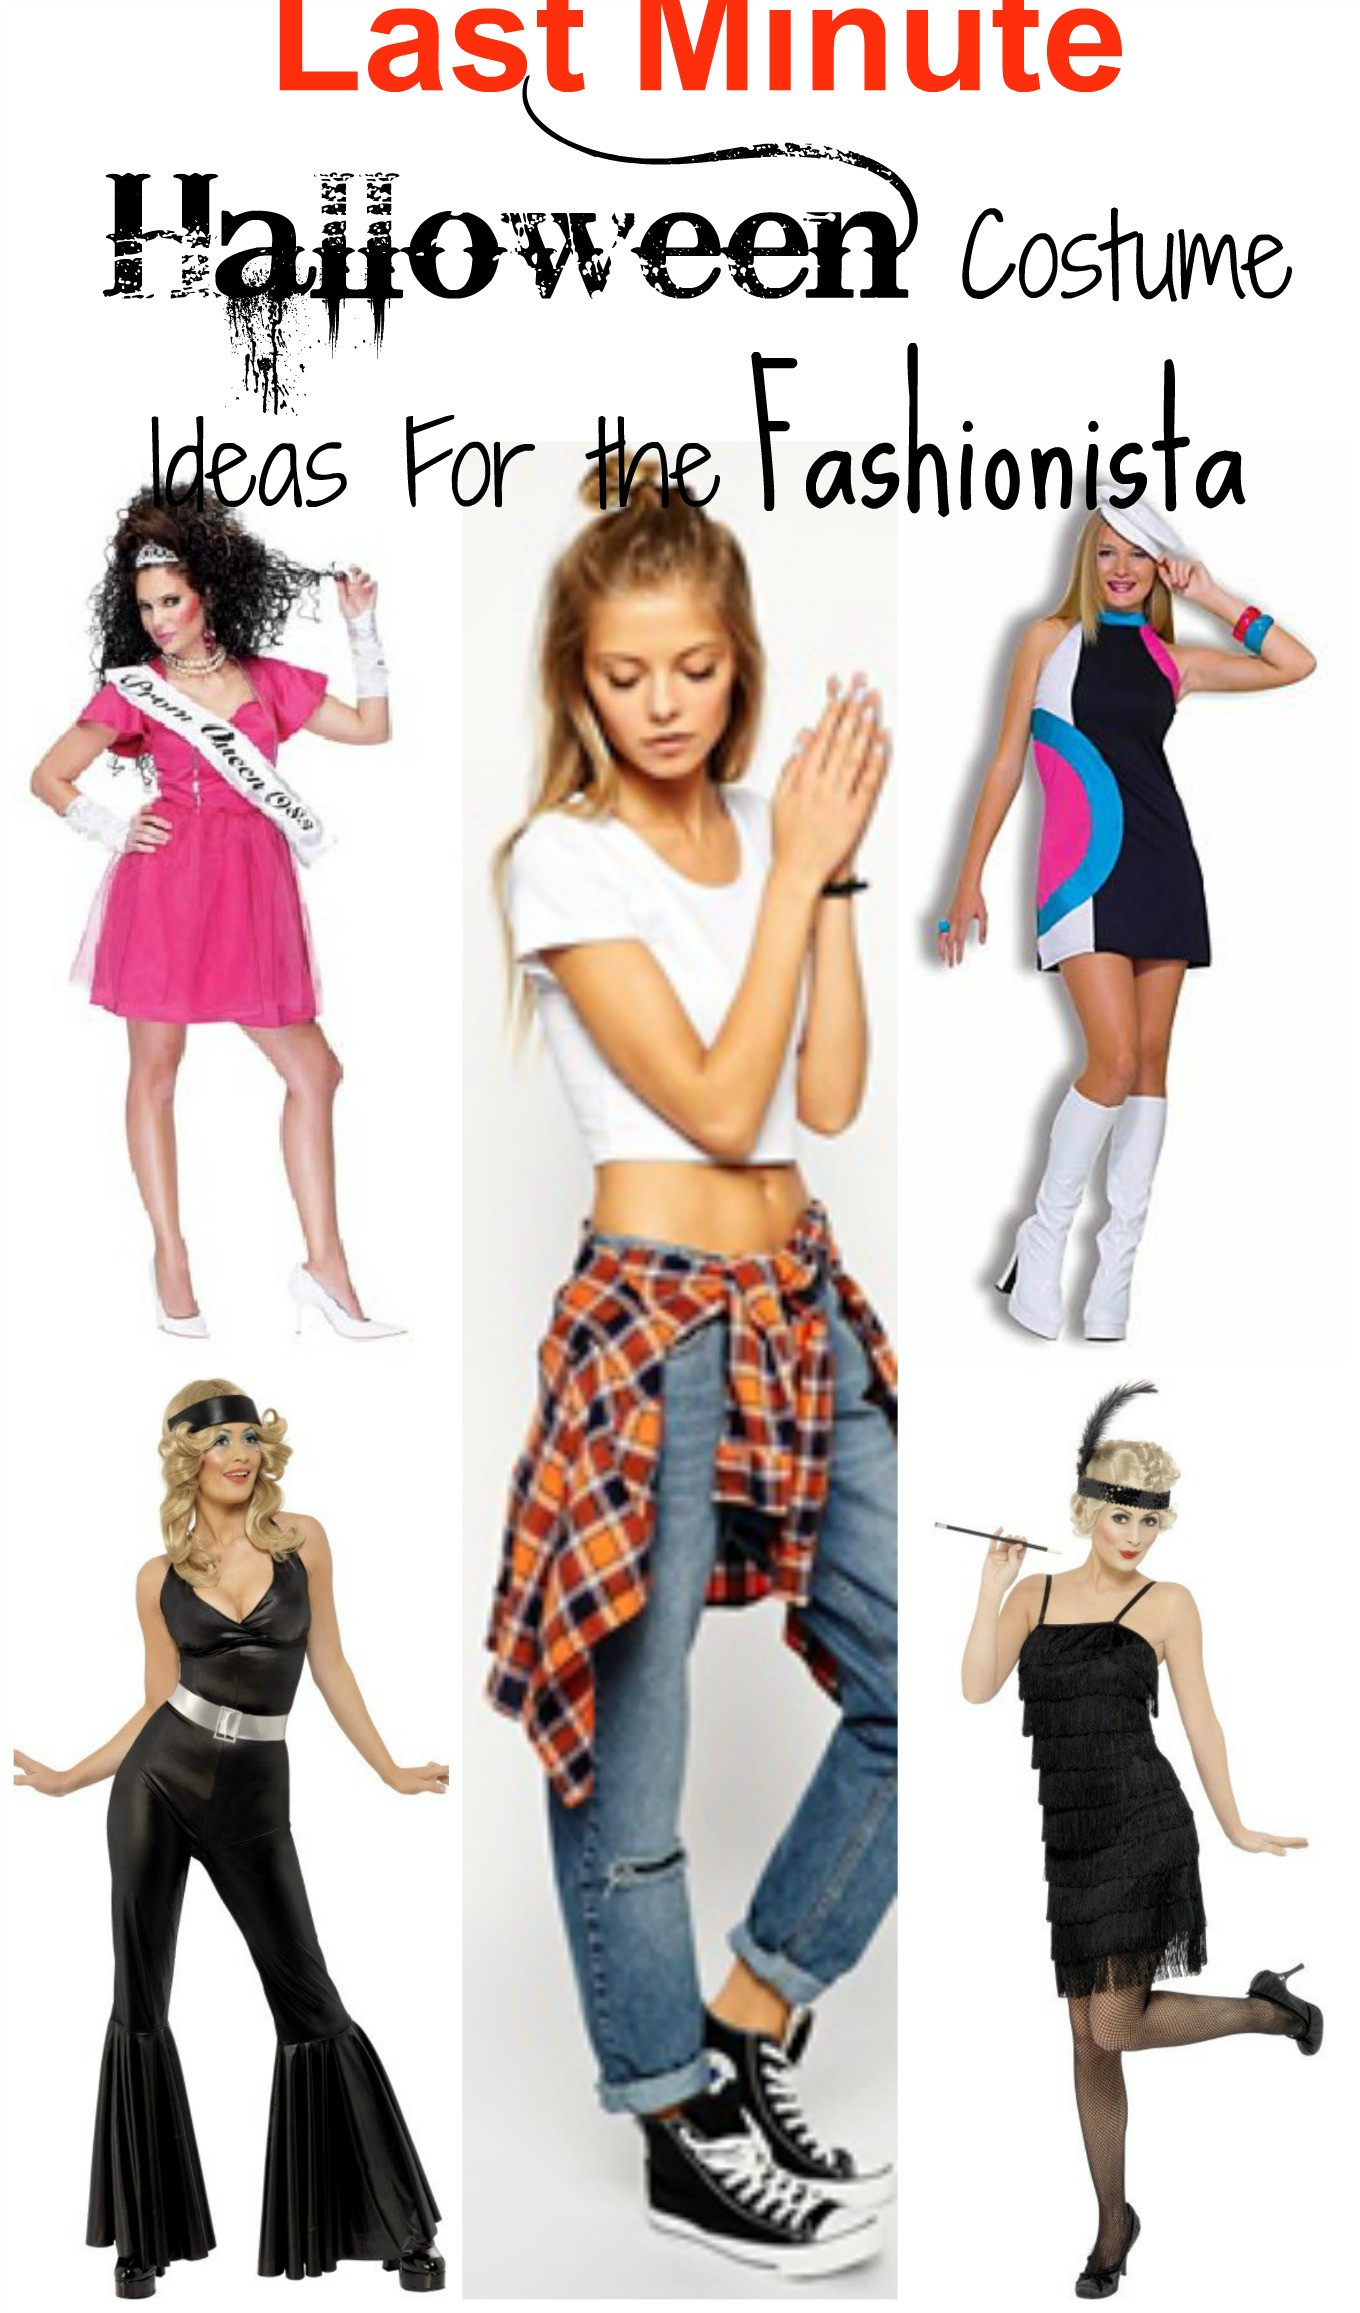 Last Minute Halloween Costume Ideas
 5 Last Minute Halloween Costume Ideas For The Fashionista